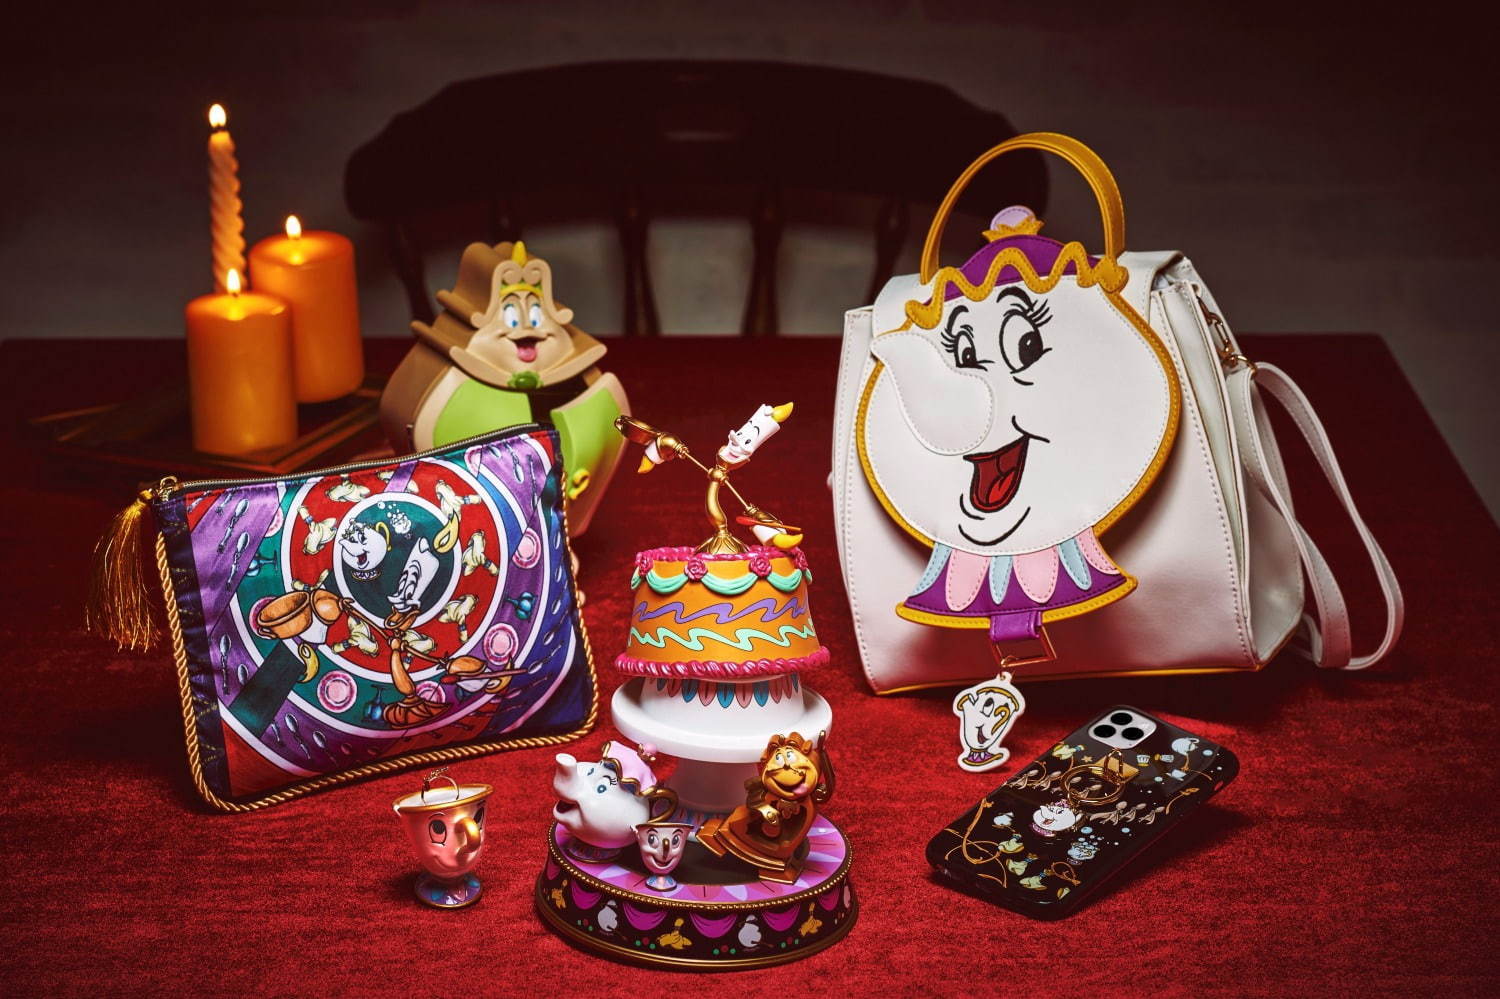 ディズニー 美女と野獣 モチーフのバッグ 小物 ポット夫人とチップのiphoneケースやバッグ ファッションプレス